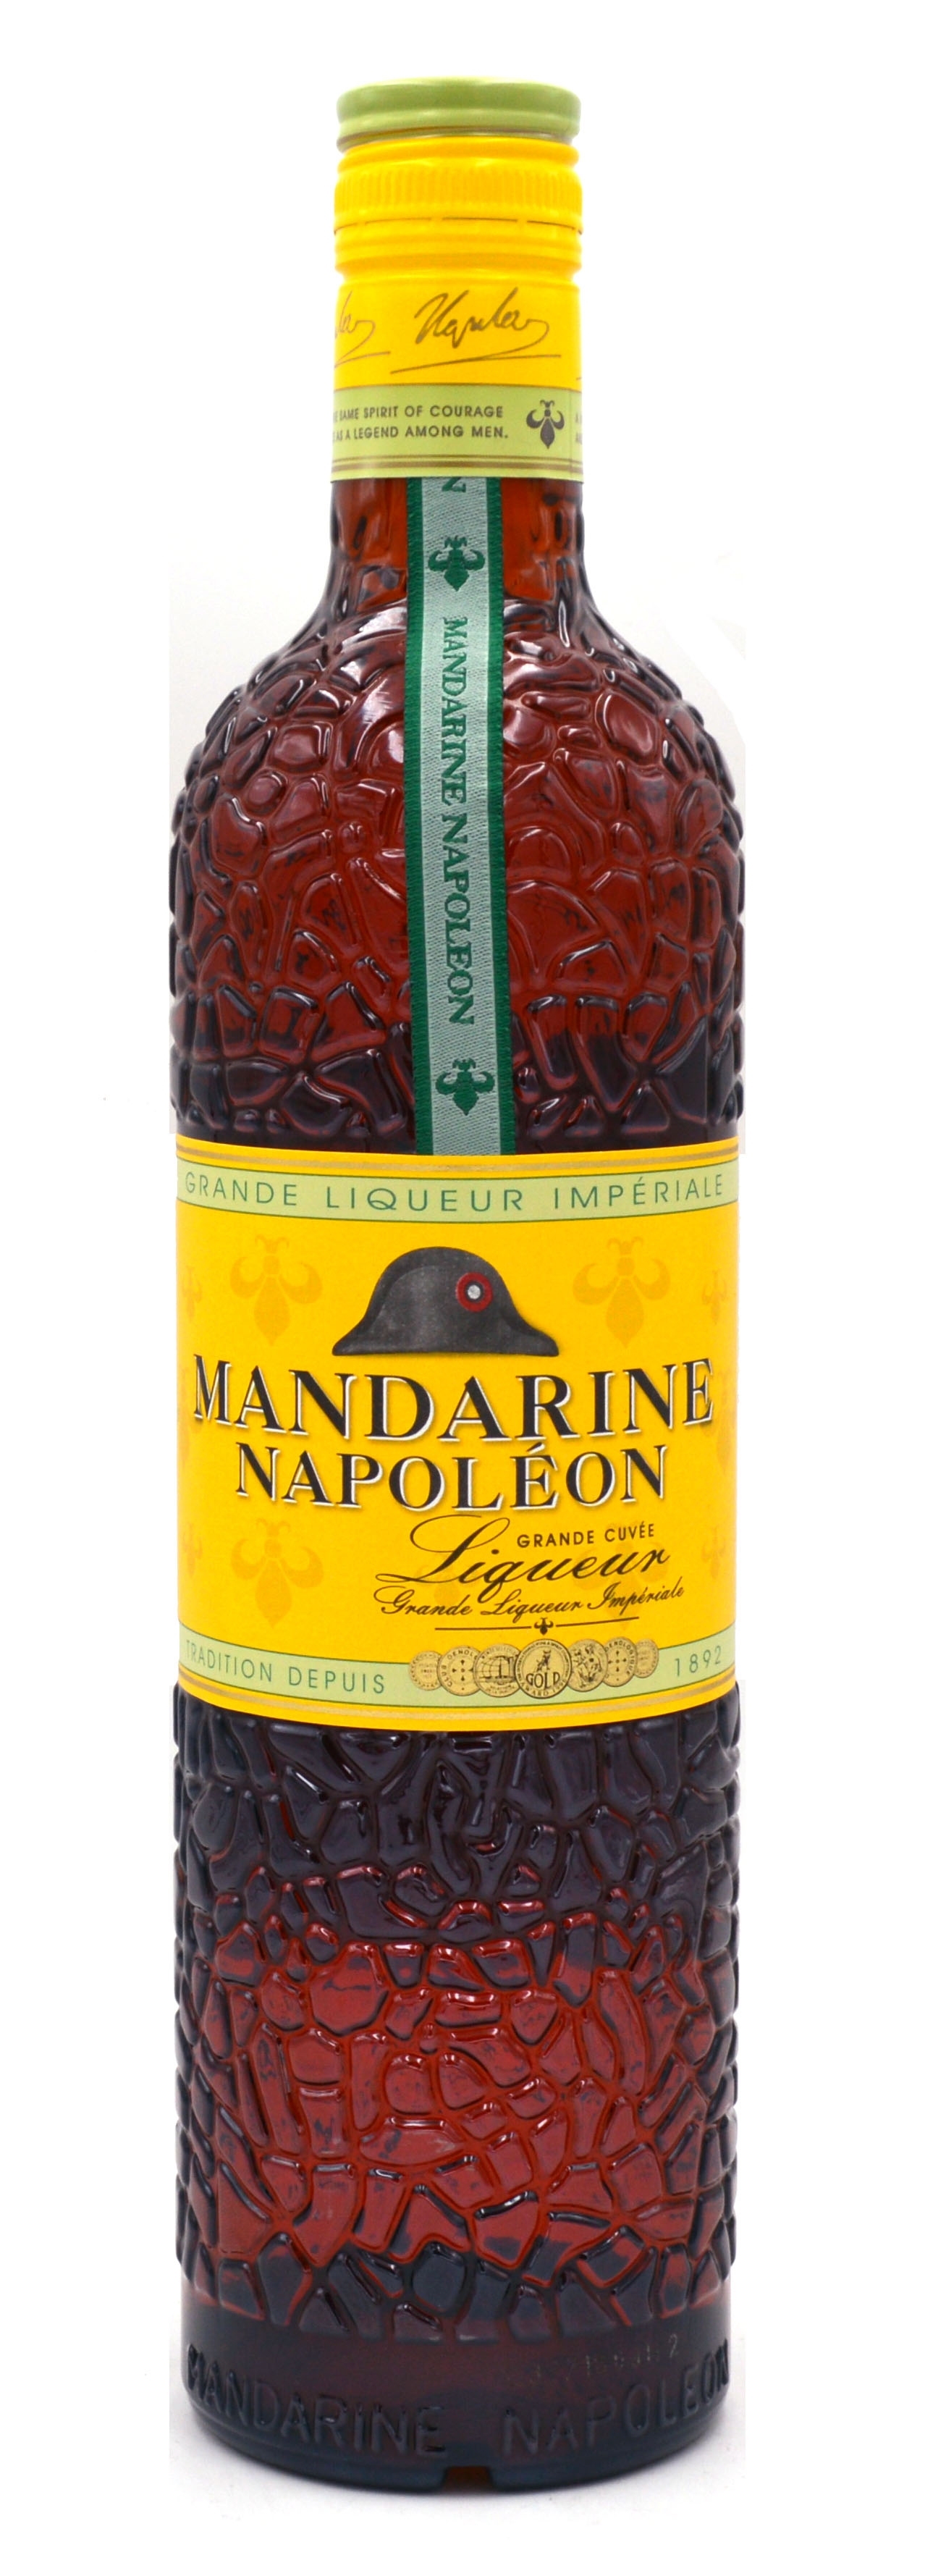 Mandarine Napoleon Gift Box 2 glasses